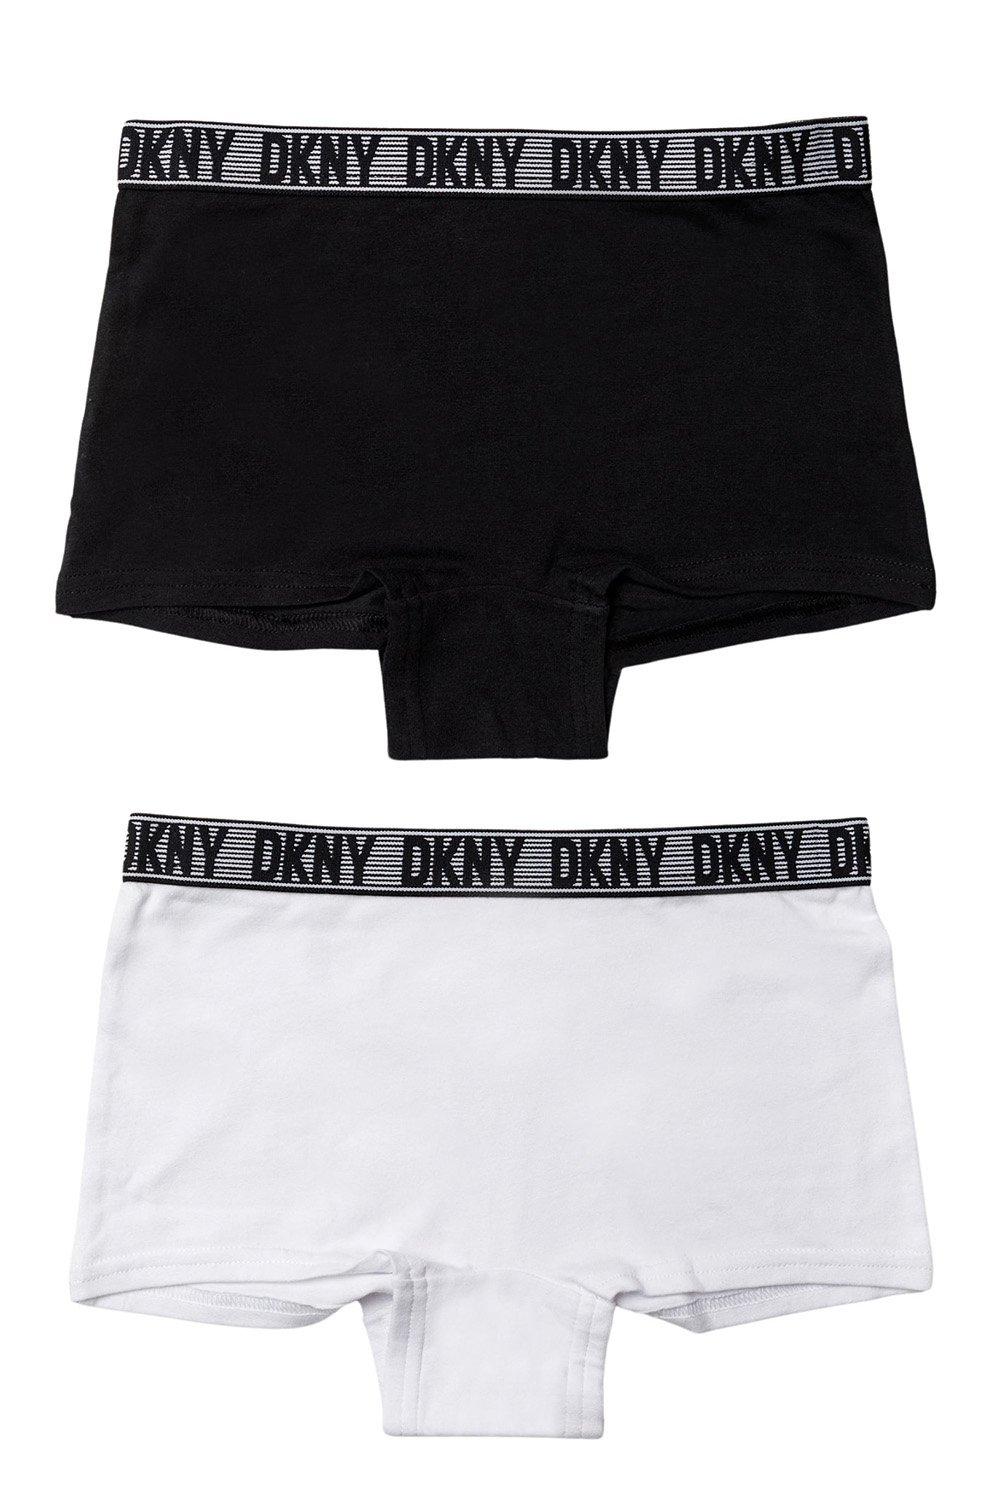 Girls 3 Pack Knickers Set Boy Shorts Briefs Kids Teens Black White Underwear Age 6-14 years